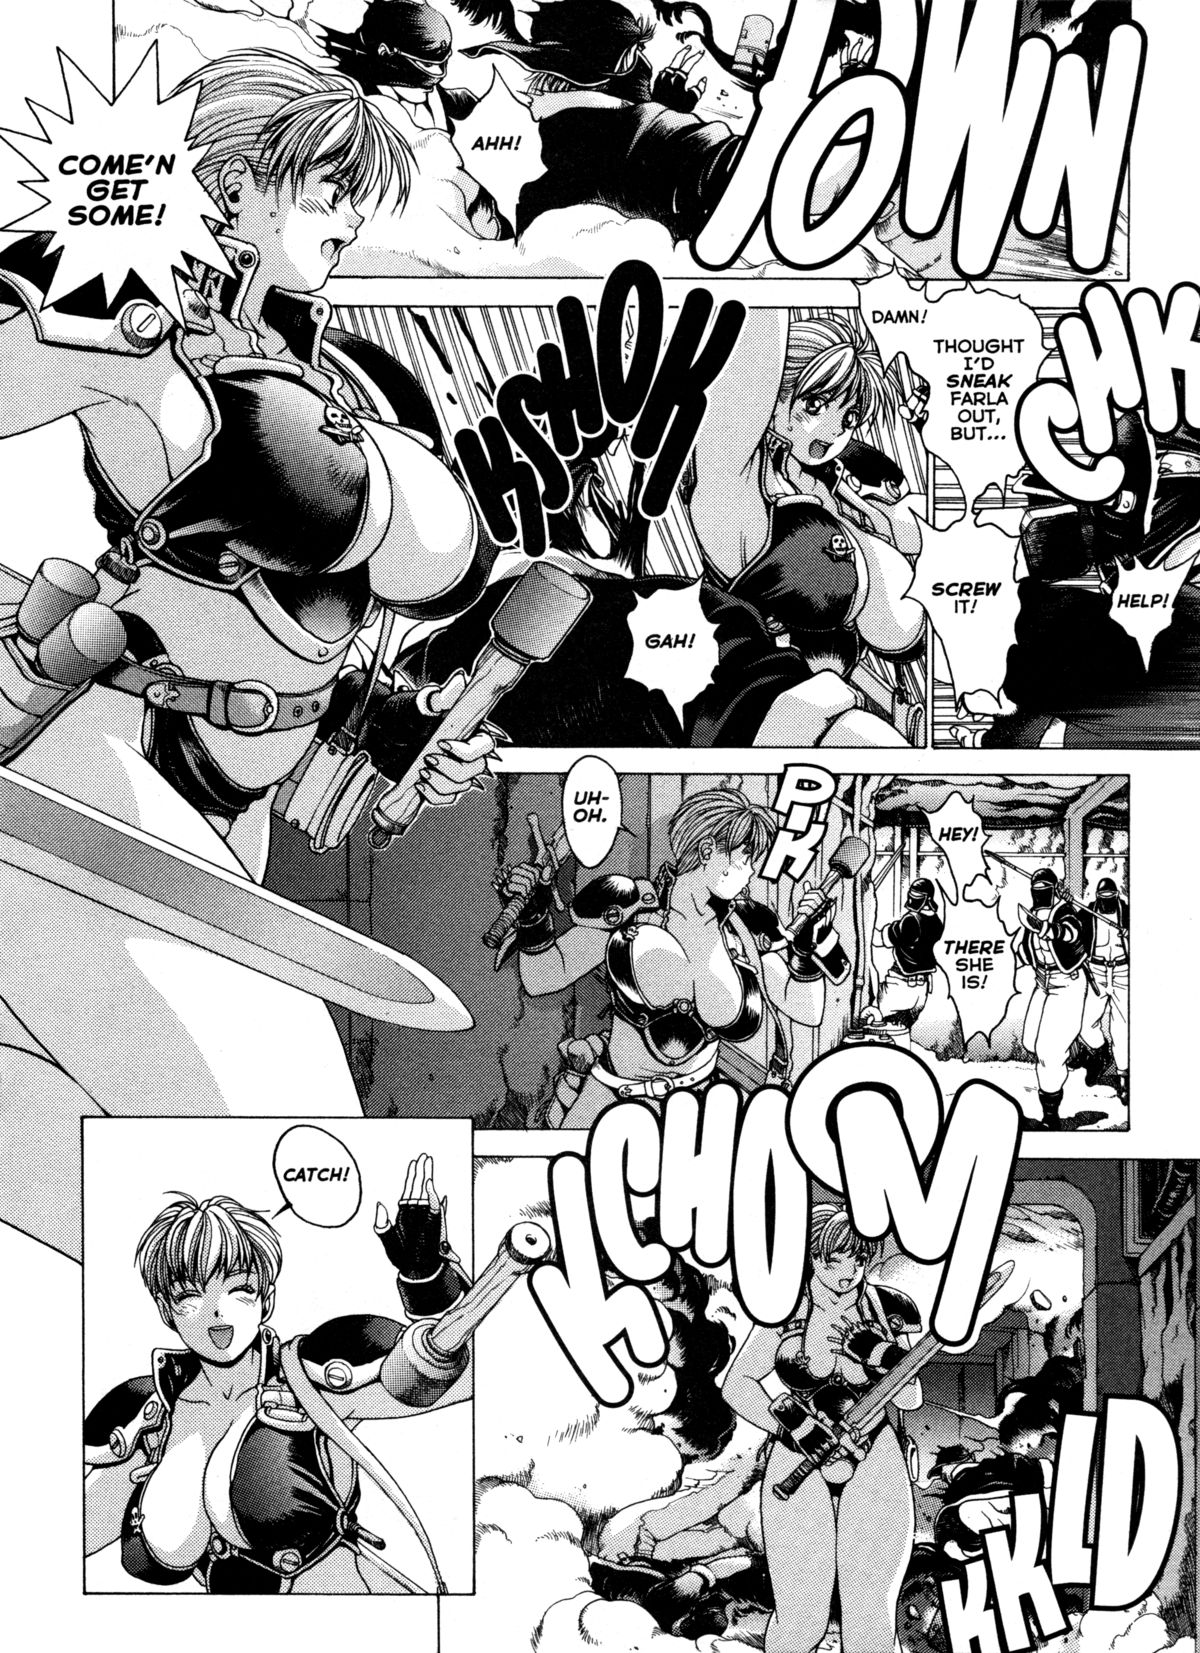 [Kozo Yohei] Spunky Knight XXX 6 [英語]